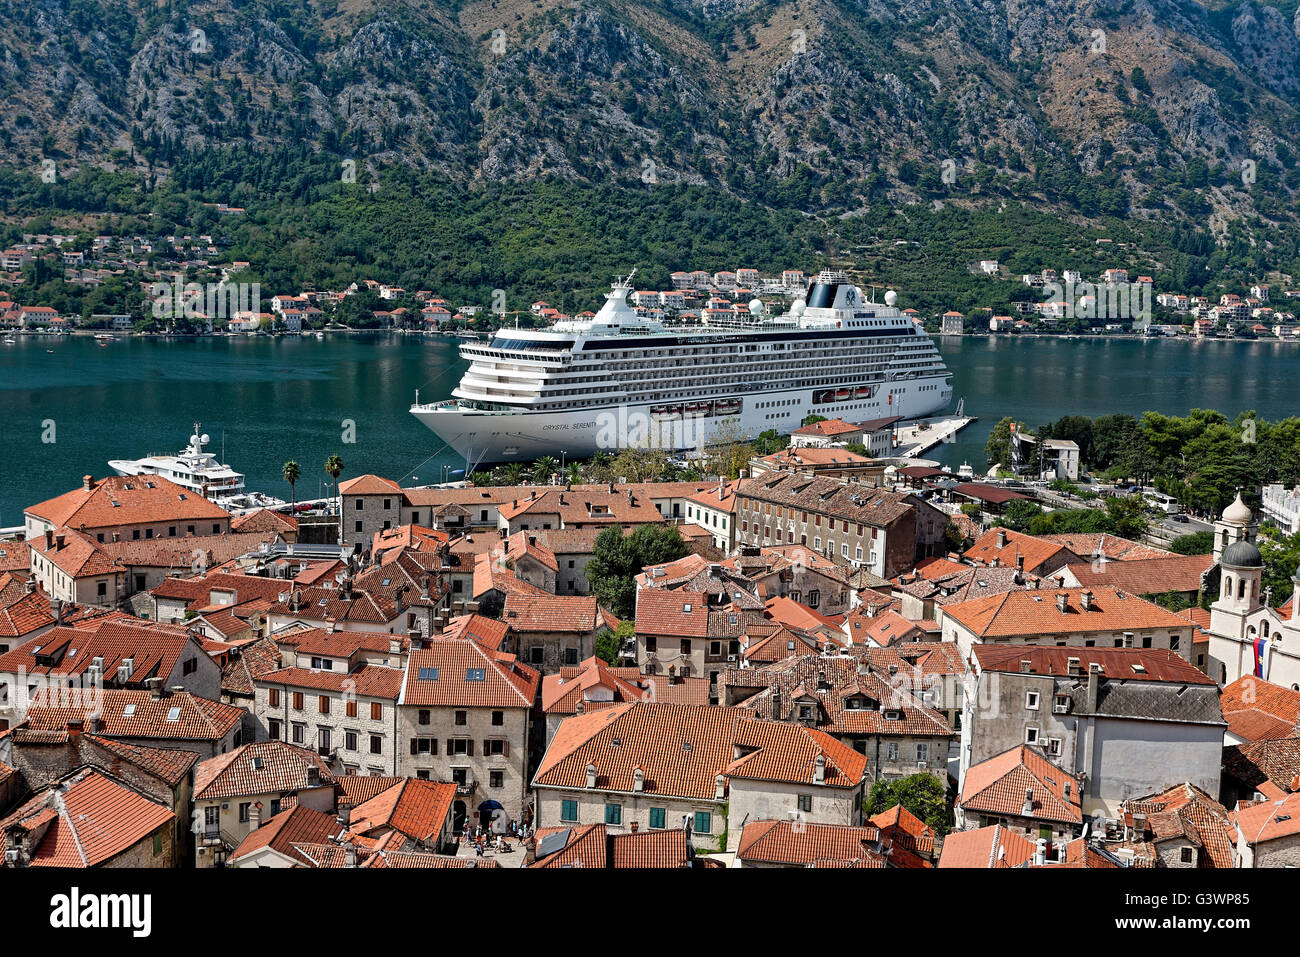 Vista della nave da crociera ancorata nella città vecchia di Kotor, un sito del patrimonio mondiale, Montenegro Foto Stock